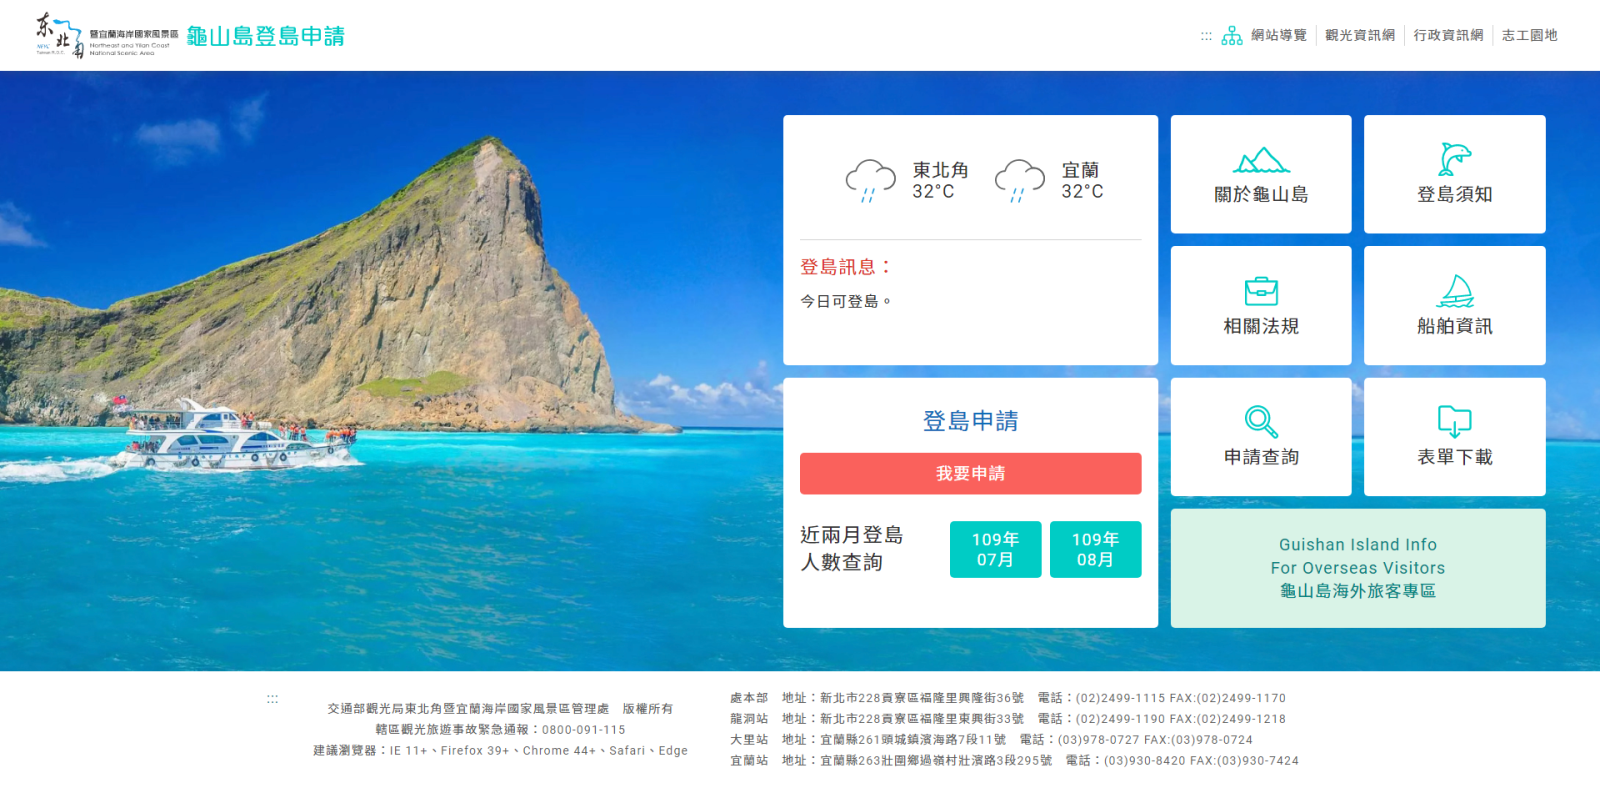 เวอร์ชั่นใหม่ของระบบแอพพลิเคชั่นลงจอดที่เกาะ Guishan